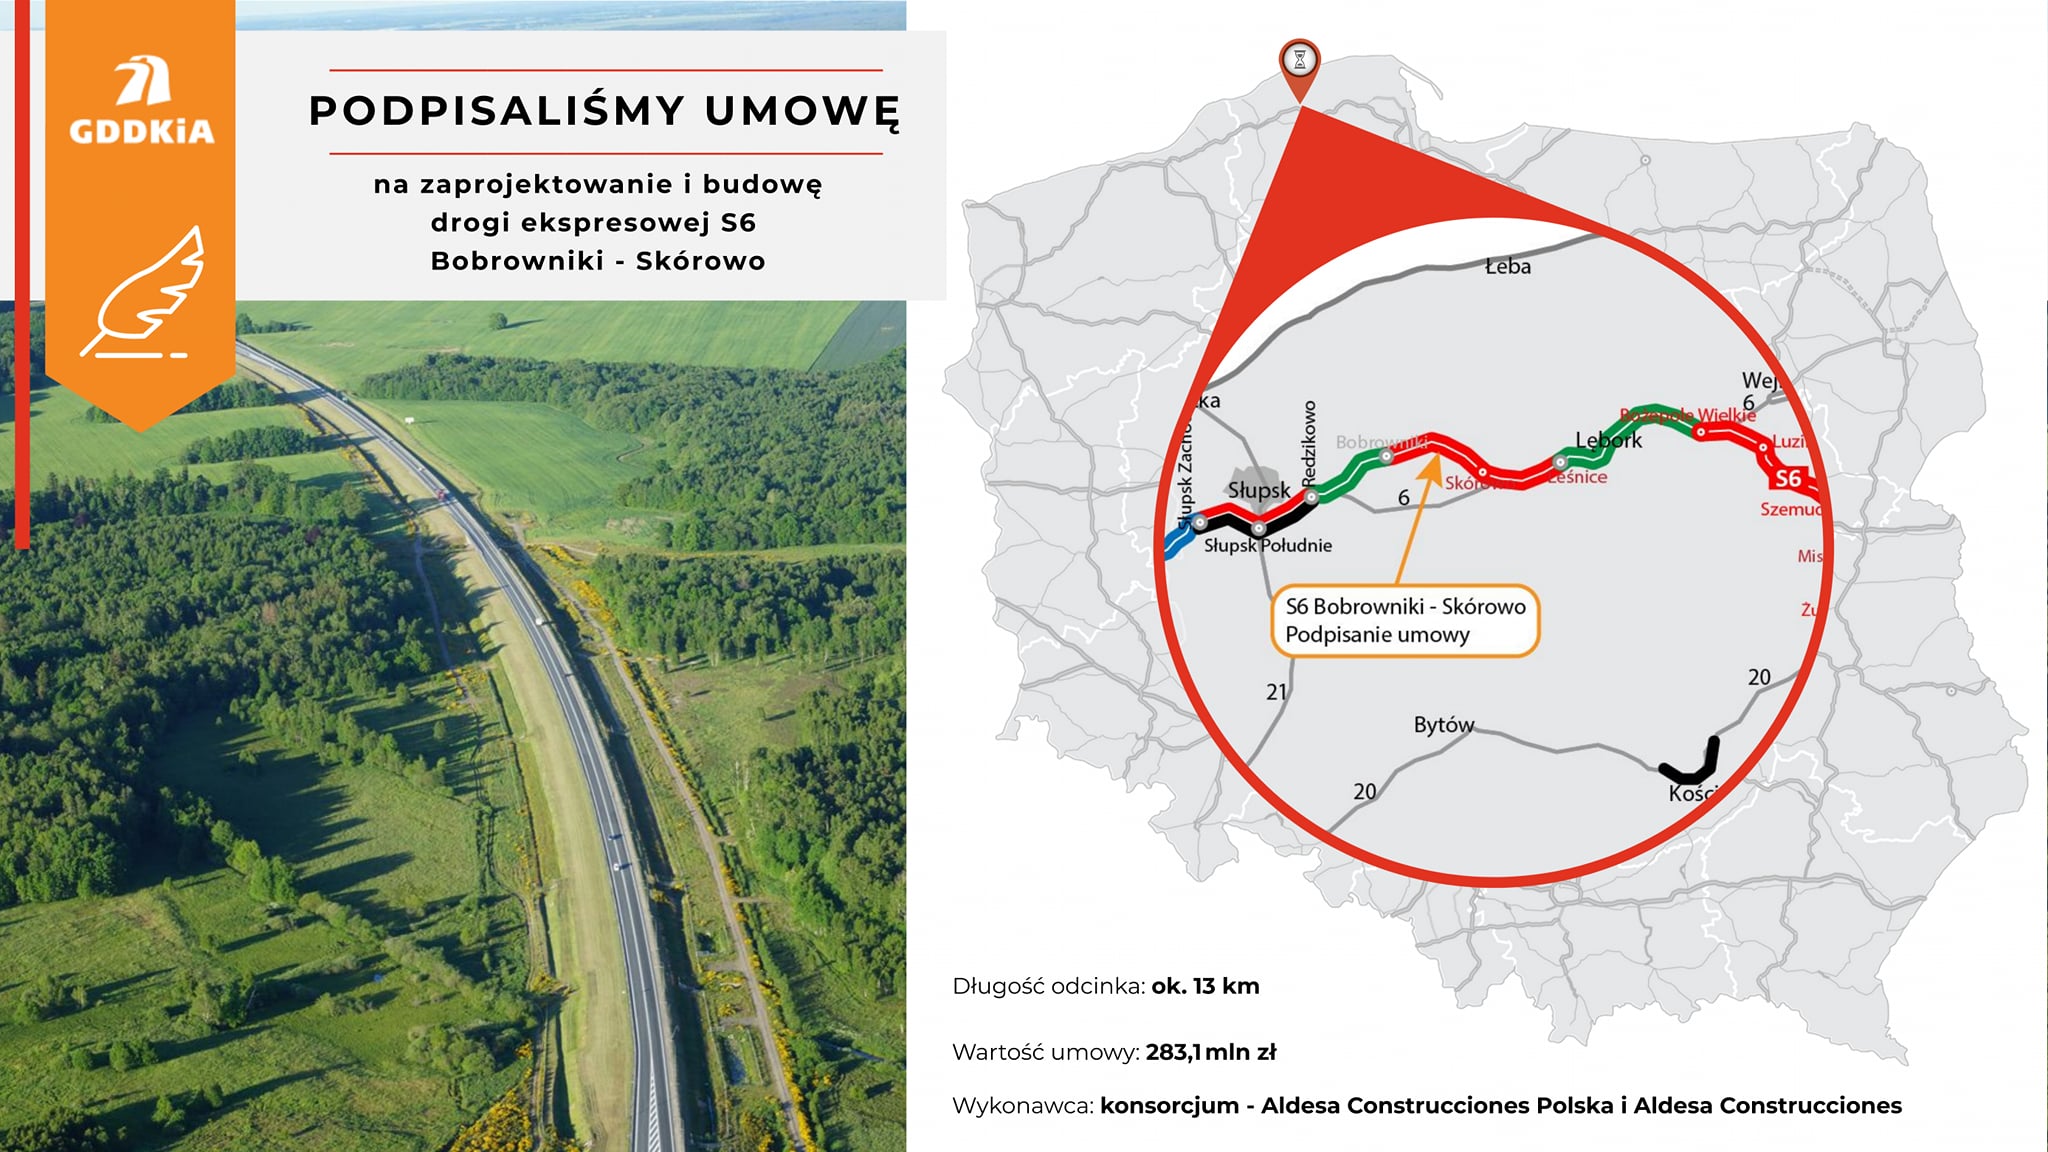 We wtorek została podpisana umowa z wykonawcą na budowę odcinka Bobrowniki - Skórowo. Inwestycja w budowę trasy S6 to wielki krok dla Pomorza i kolejna dobra informacja dla mieszkańców.